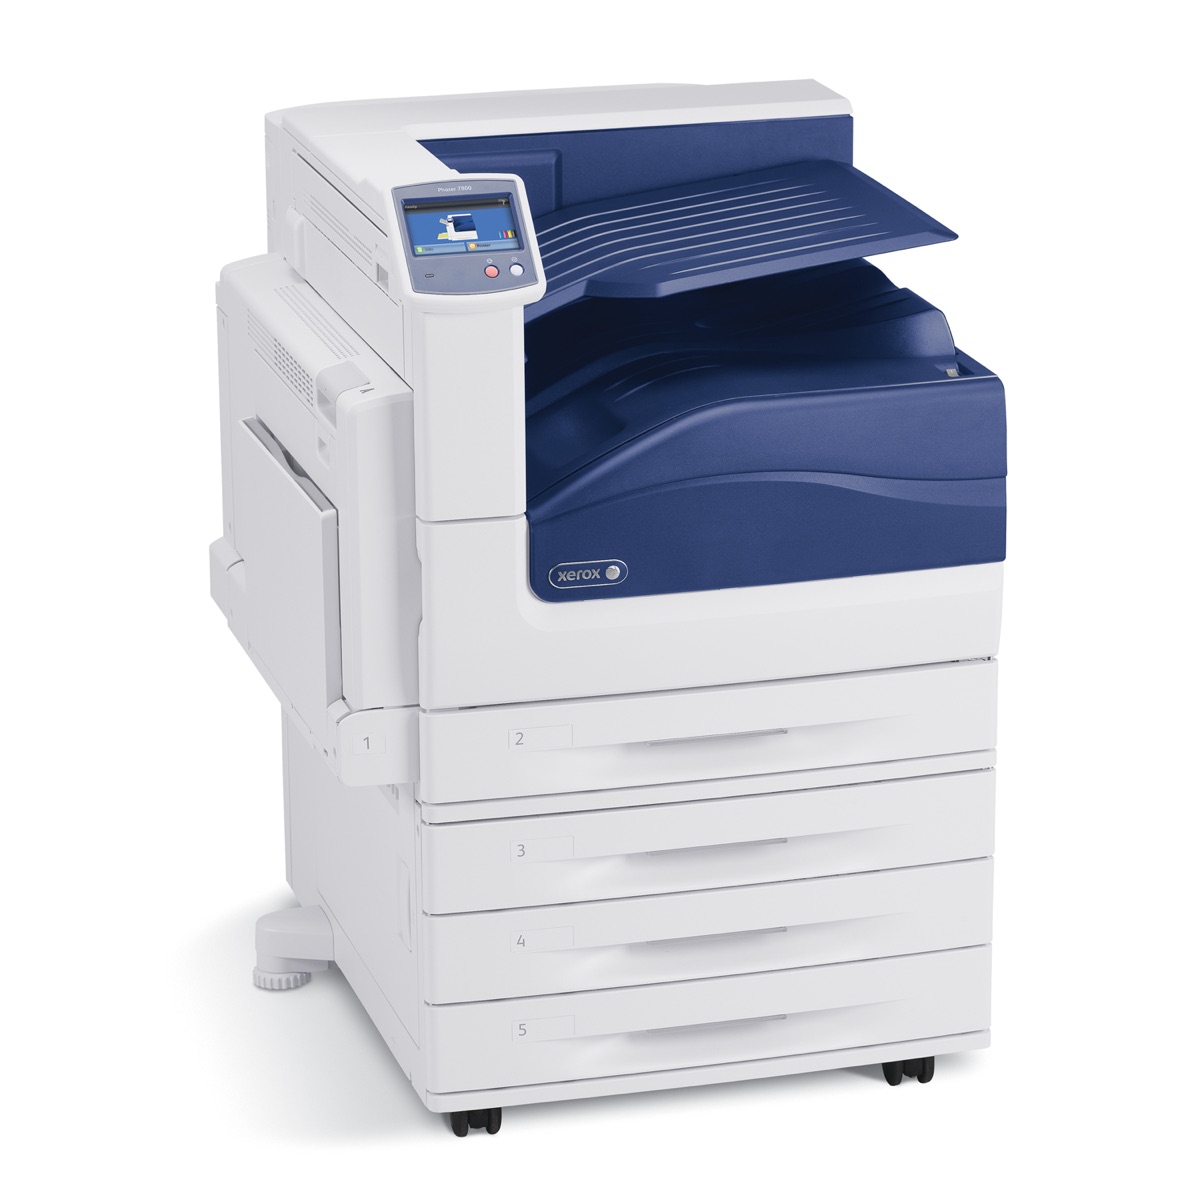 Xerox Printers:  The Xerox Phaser 7800GX Printer